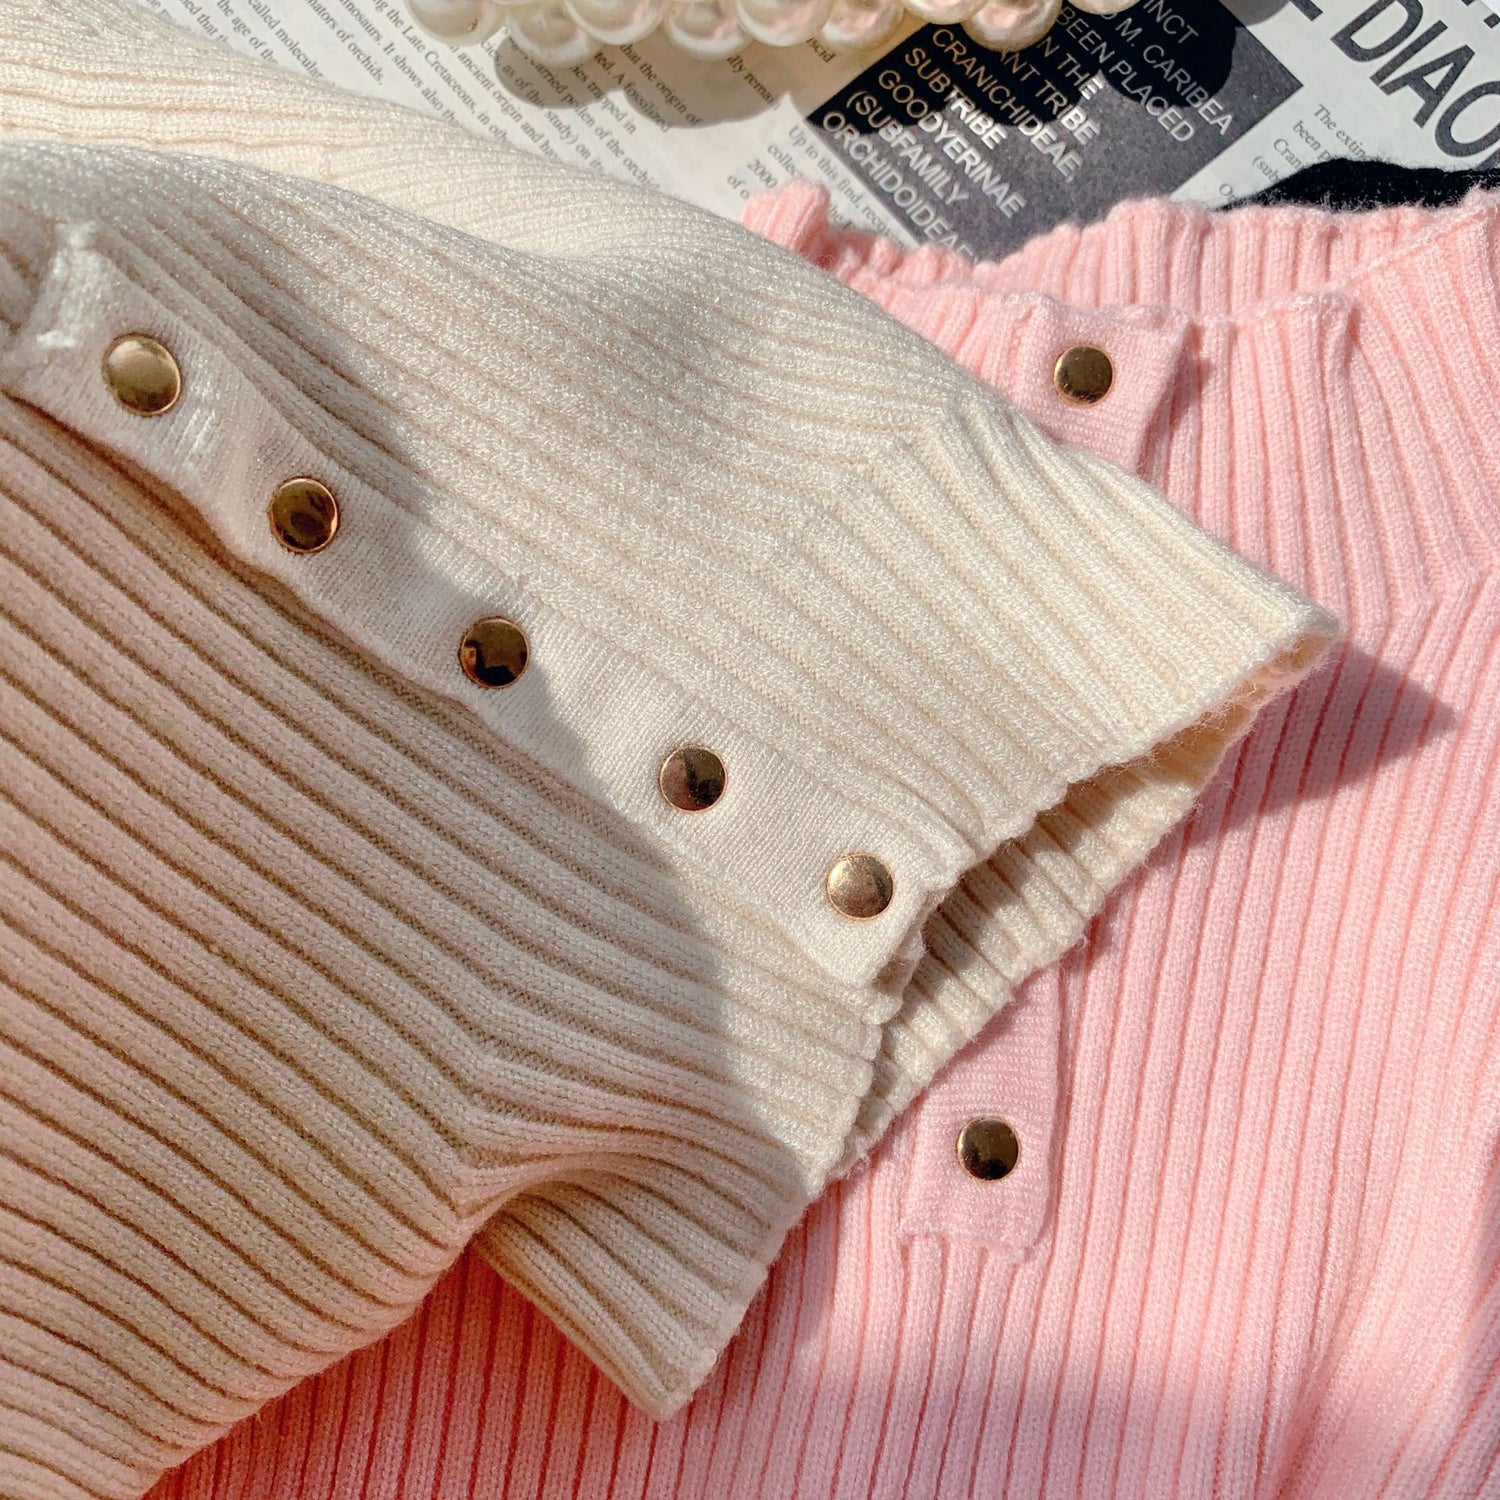 [602107] - Atasan Kaos Sweater Rajut Turtleneck Import Anak Perempuan - Motif Button Collar